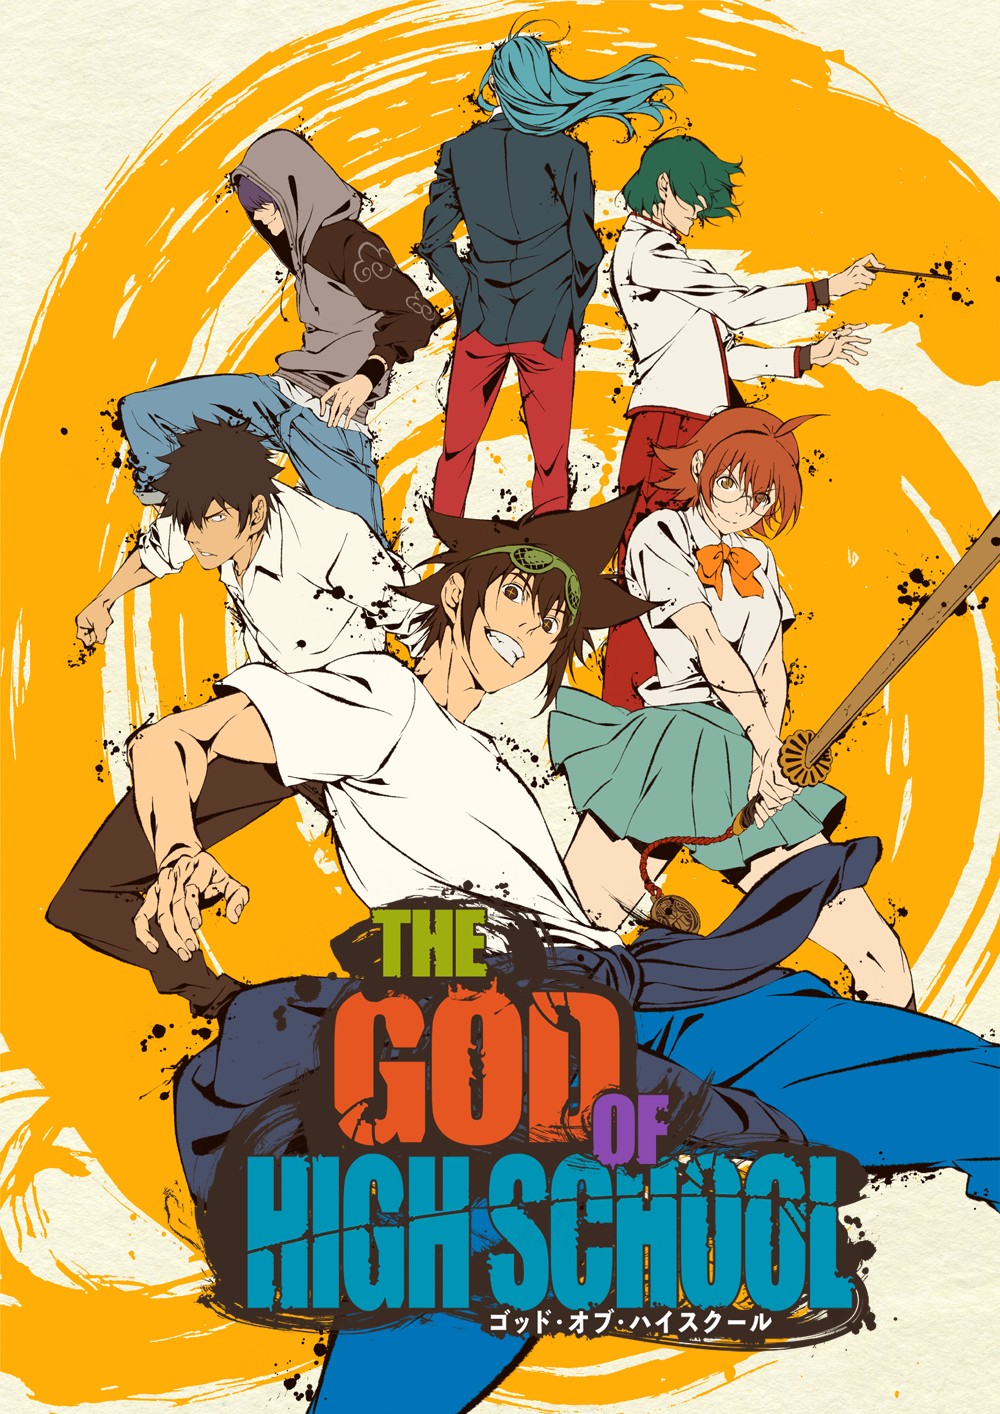 The God of High School Episode 13 Review - GOD/GOD